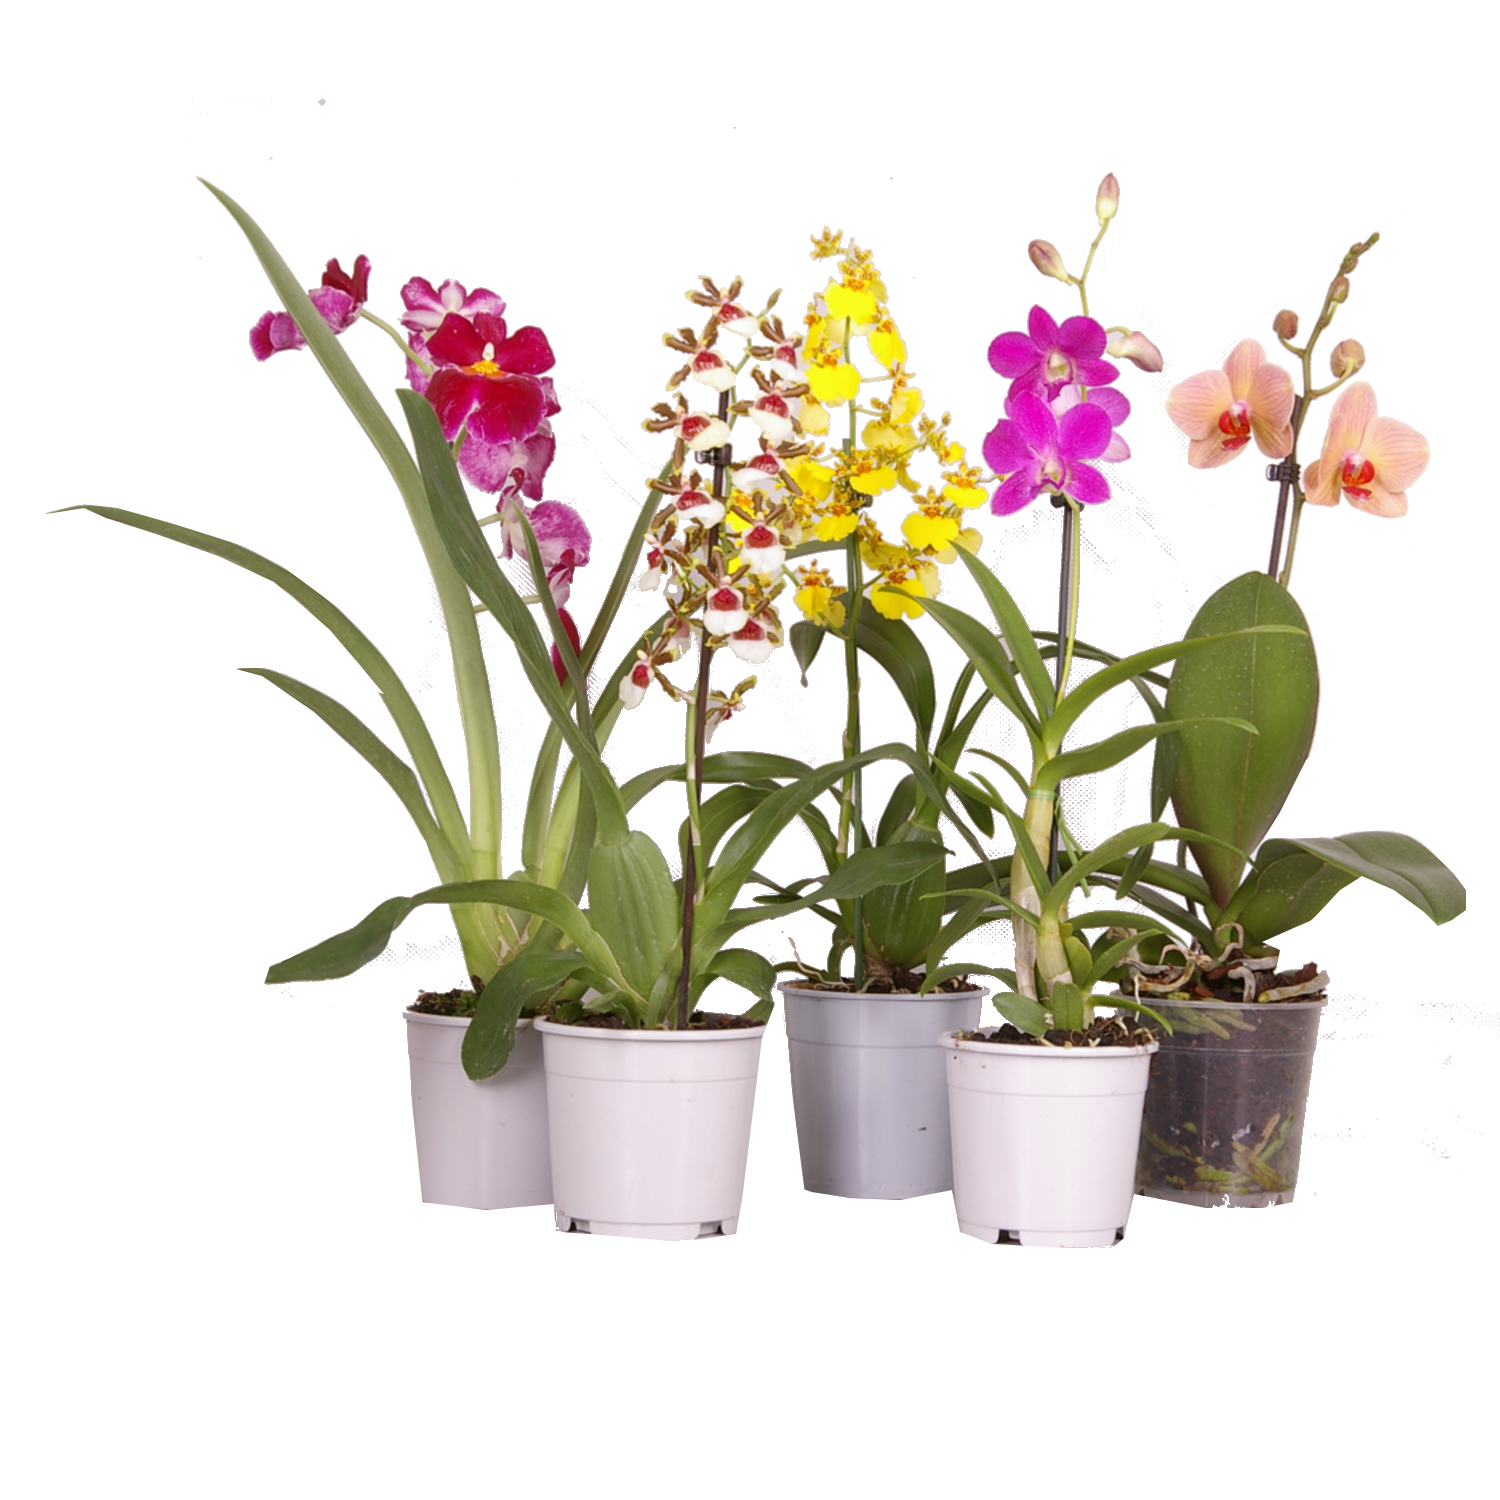 عکس گیاهان آپارتمانی ارکیده با کیفیت بالا و فرمت PNG مناسب برای استفاده در کارهای گرافیکی و تبلیغاتی